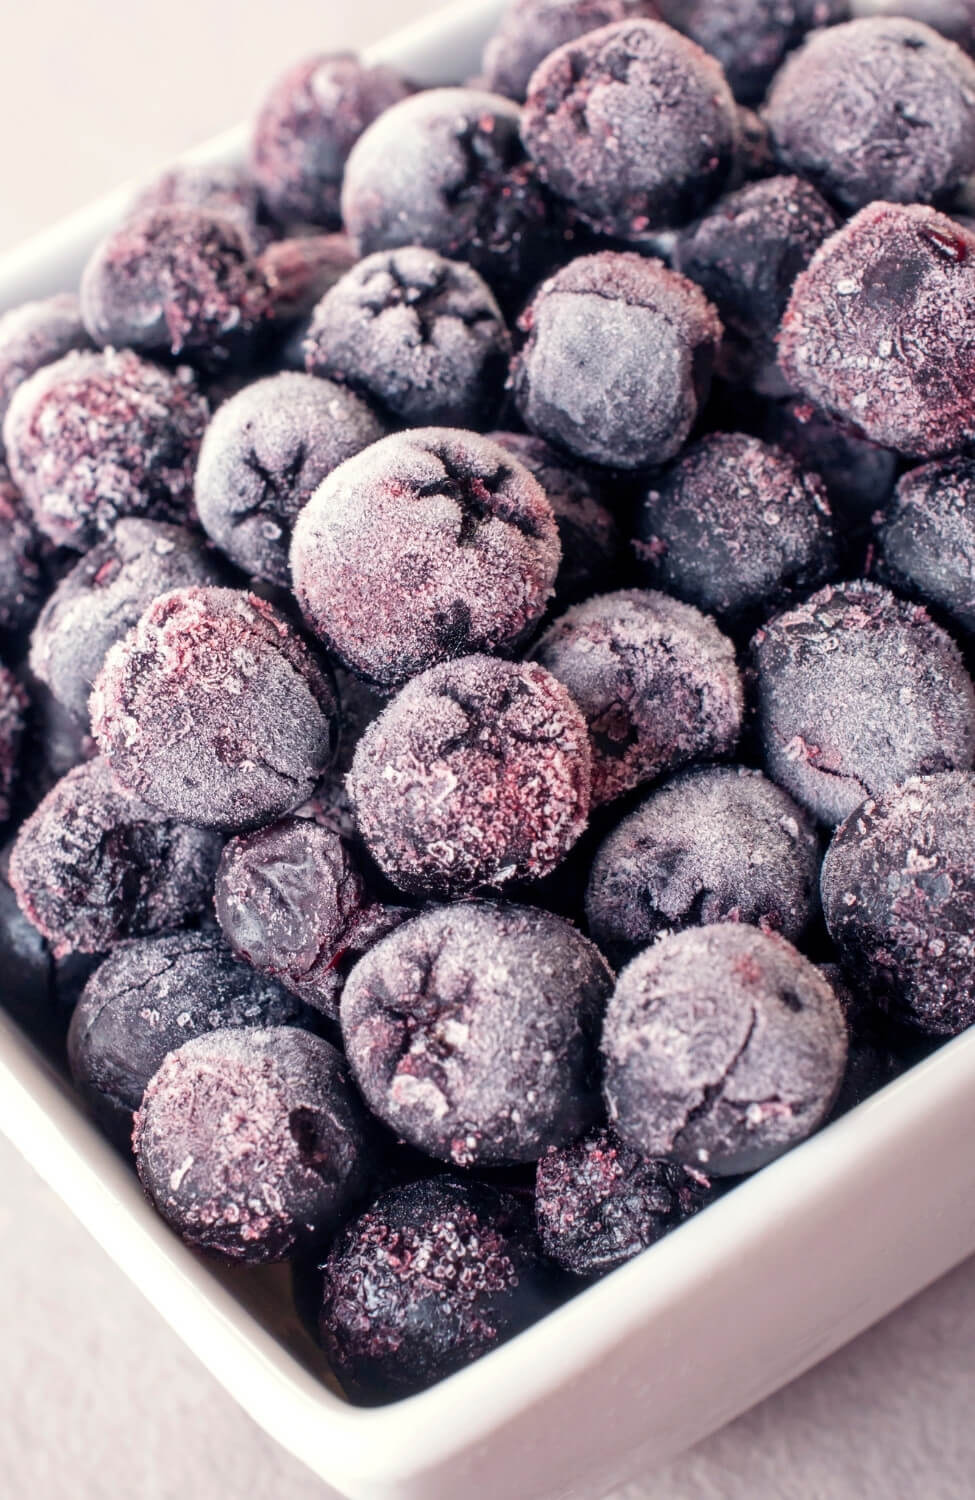 Frozen Aronia berries